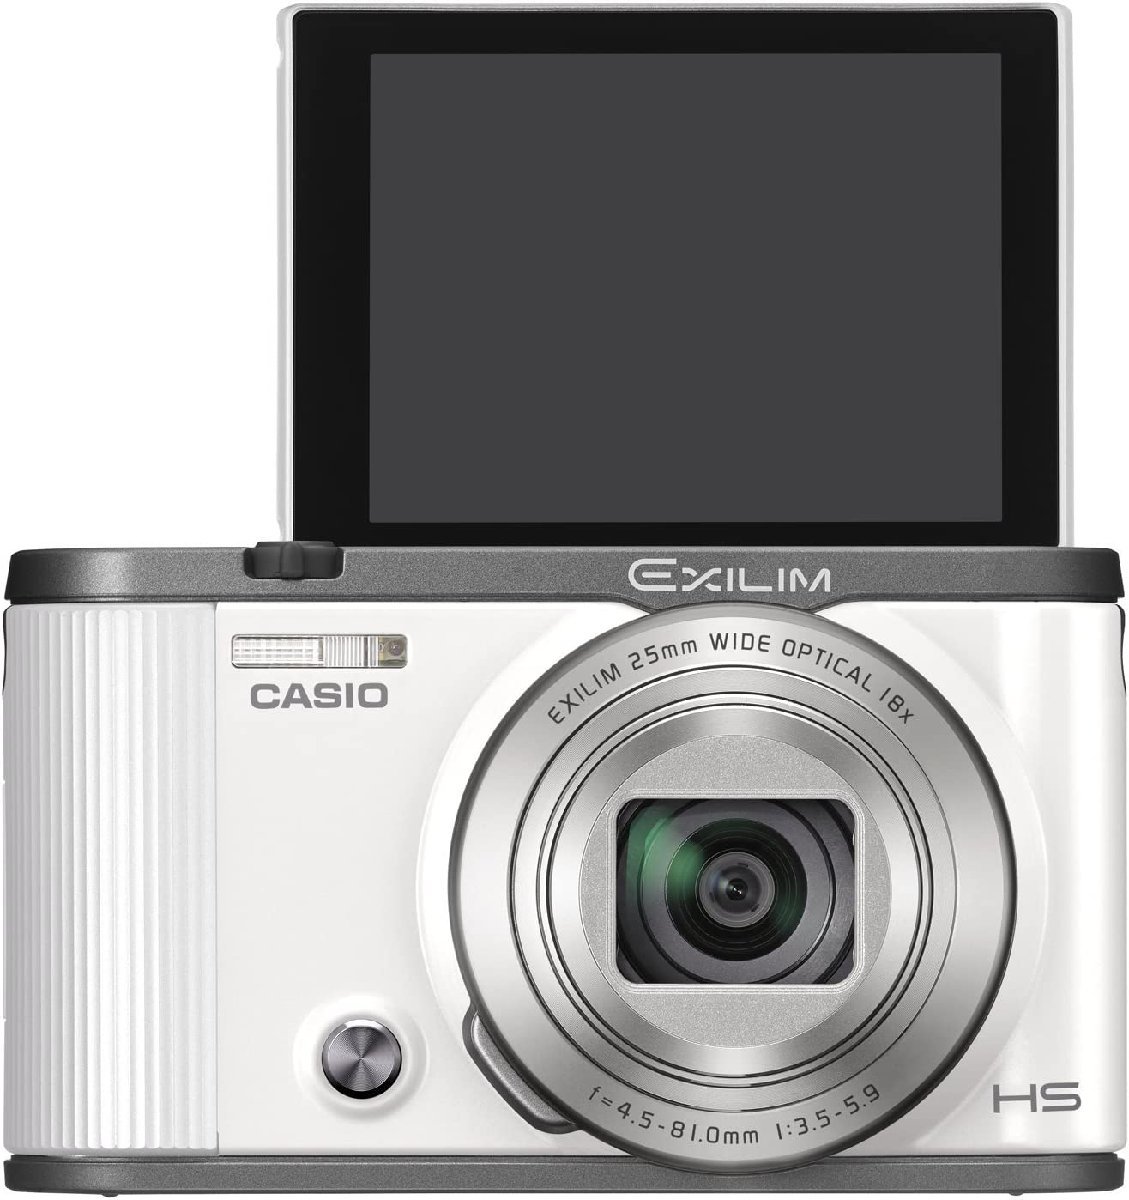 (中古品)CASIO デジタルカメラ EXILIM EX-ZR1750WE ツーリストモデル 自分撮りチル